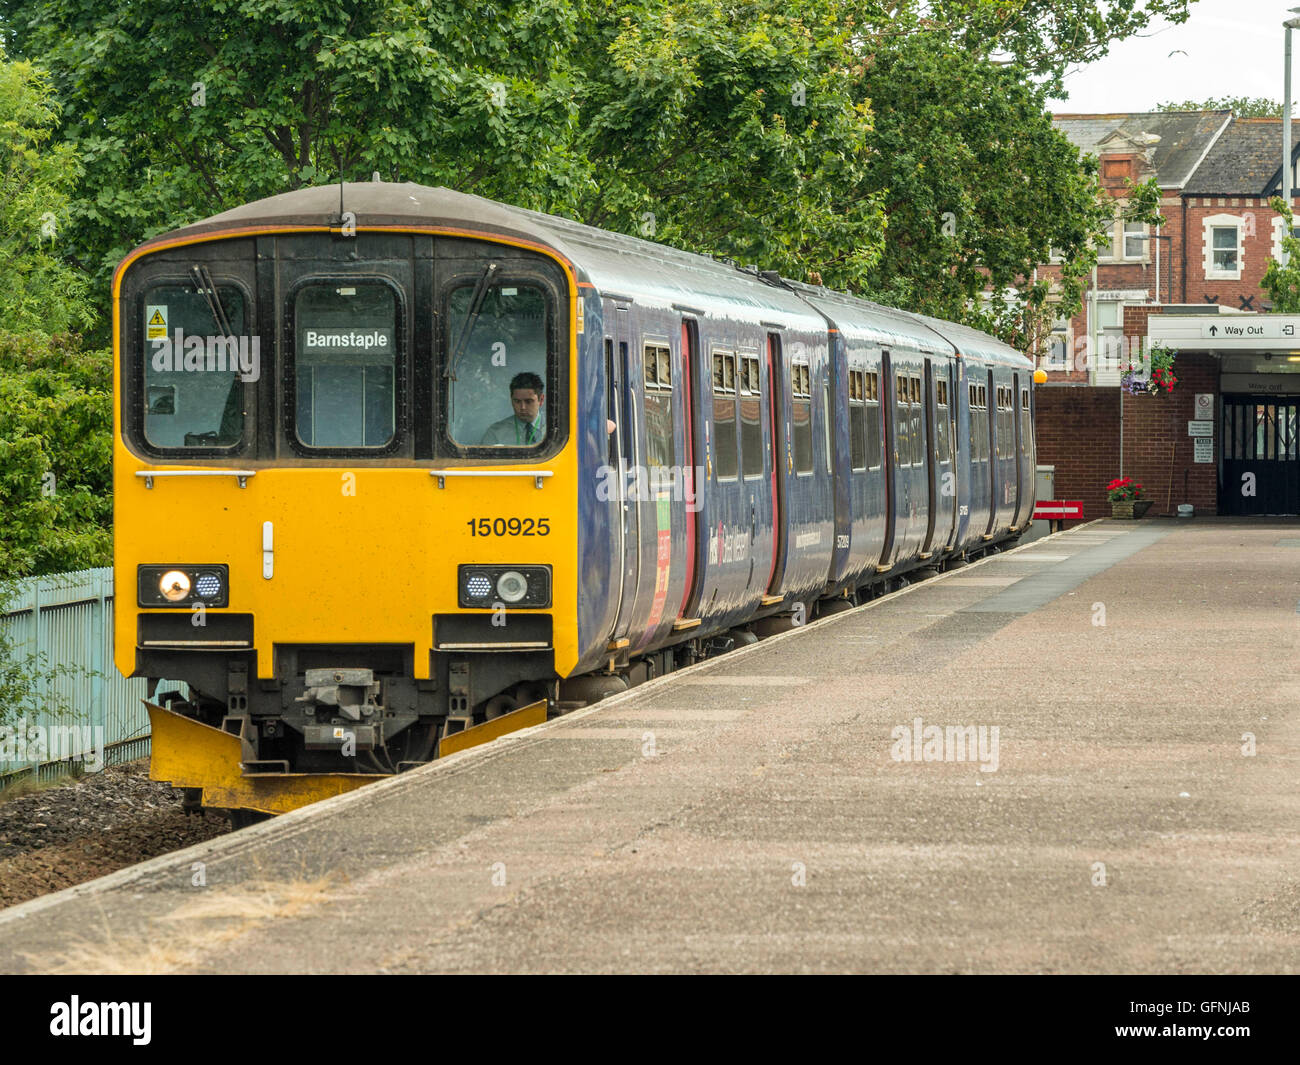 Great Western train formé de trois voitures attend à Exmouth gare à destination de Barnstaple le long de la pittoresque ligne Avocet. Banque D'Images